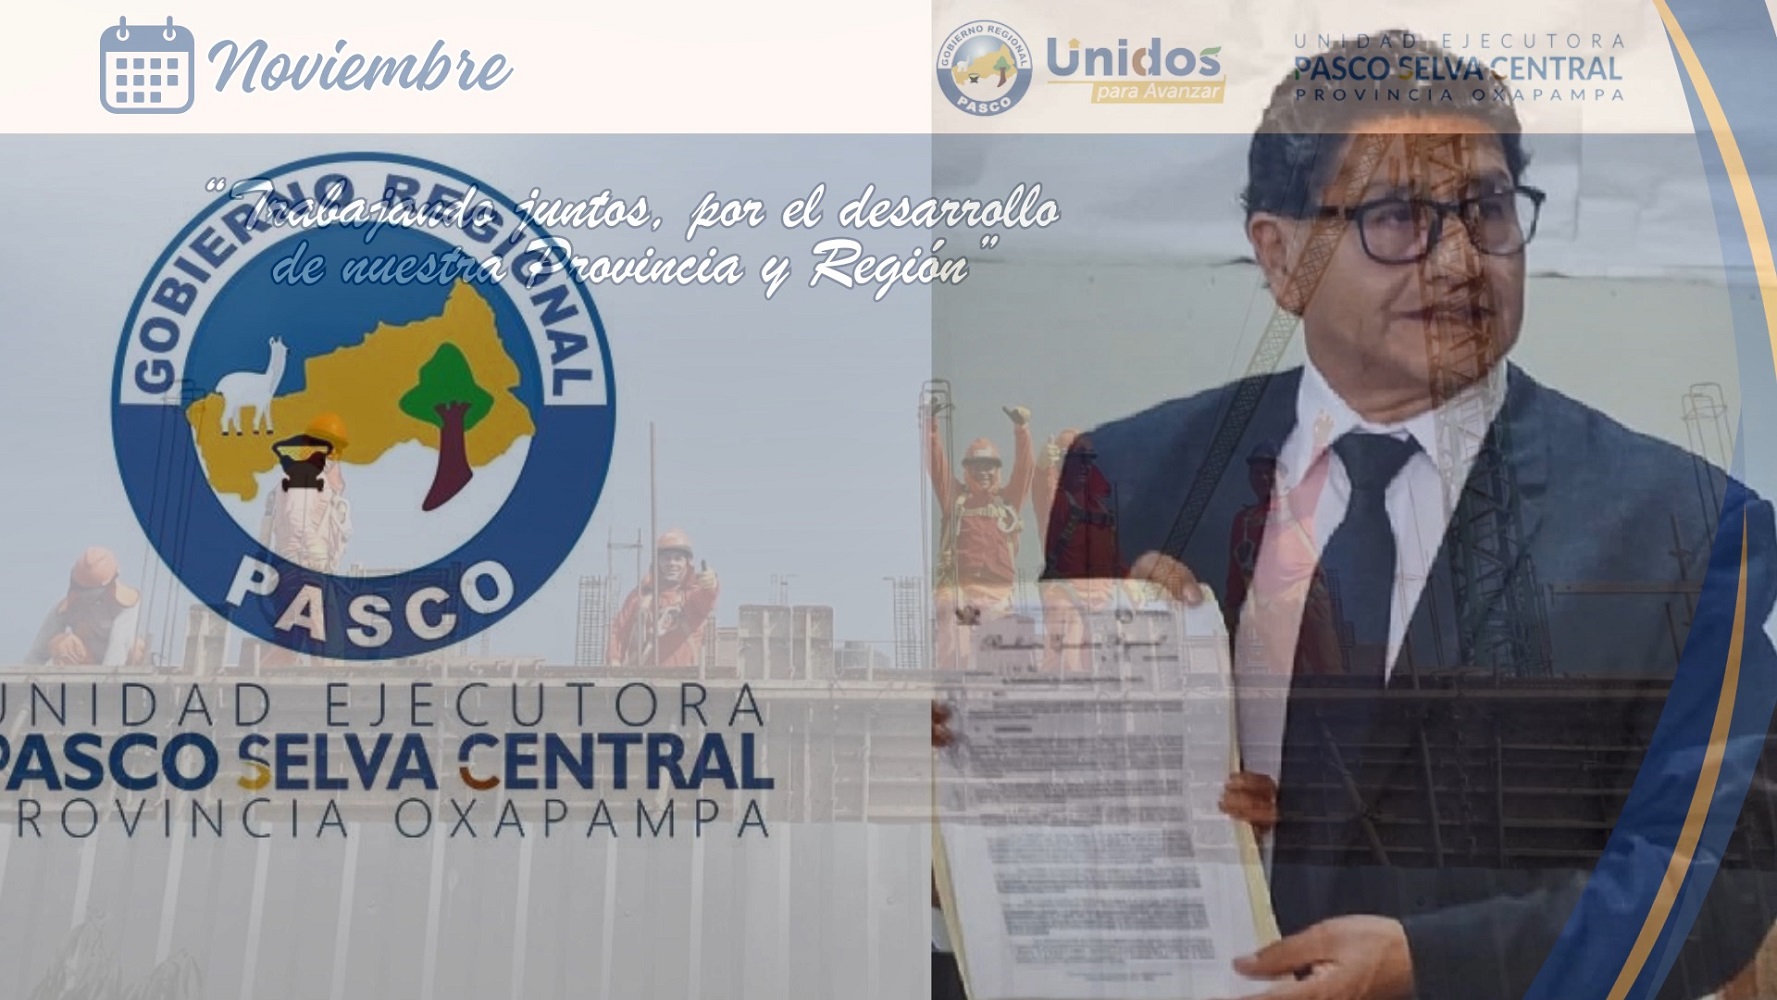 El político y economista peruano Omar Raúl Raraz Pascual, es designado Gerente de la Unidad Ejecutora Pasco Selva Central Oxapampa.